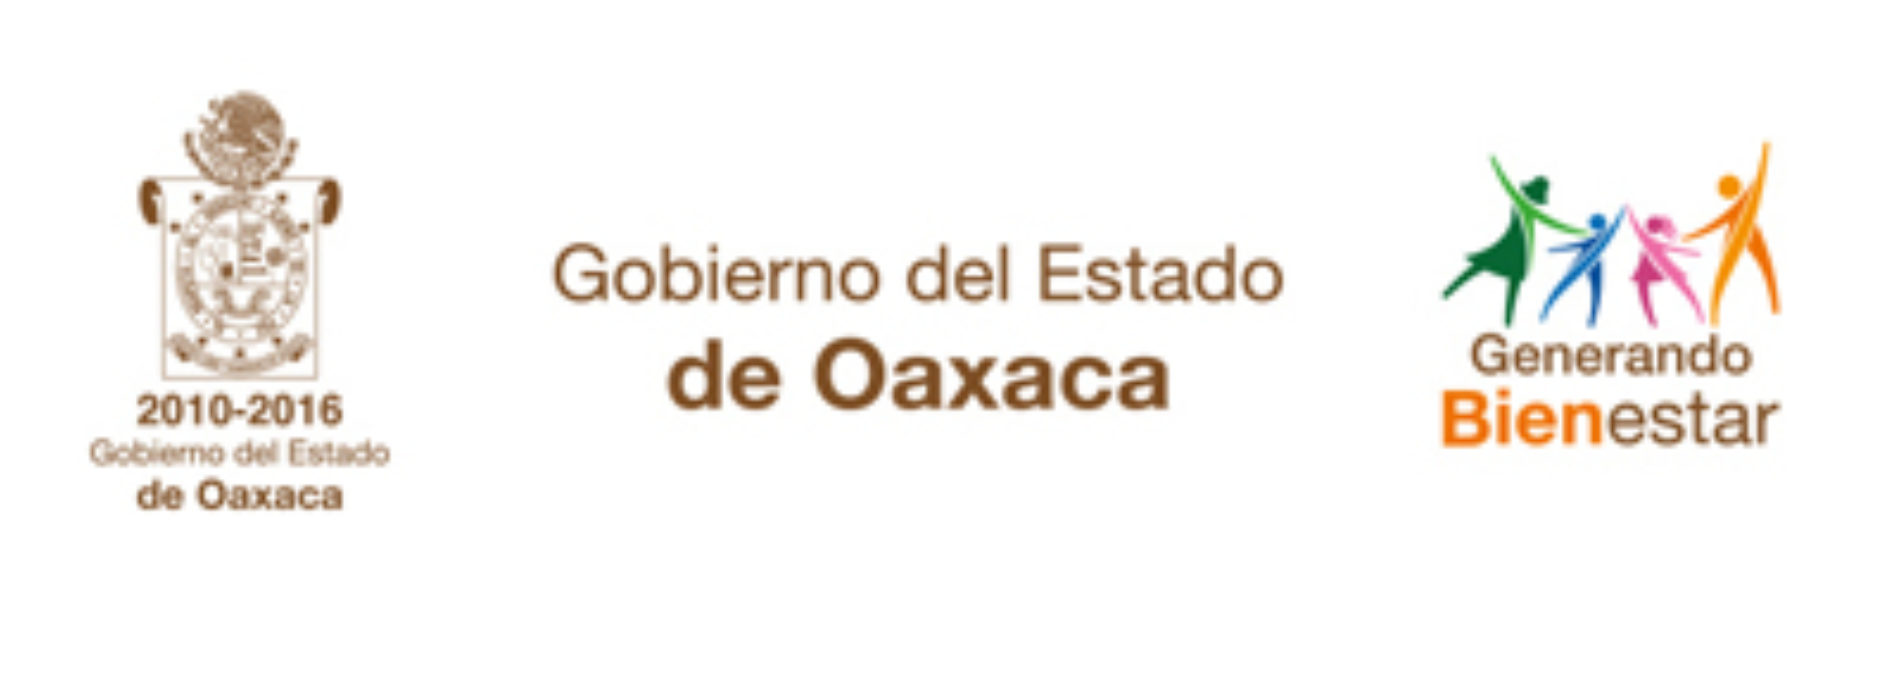 Presentan renuncia al Gobernador de Oaxaca titulares de SEDESOH,  DIF y COBAO